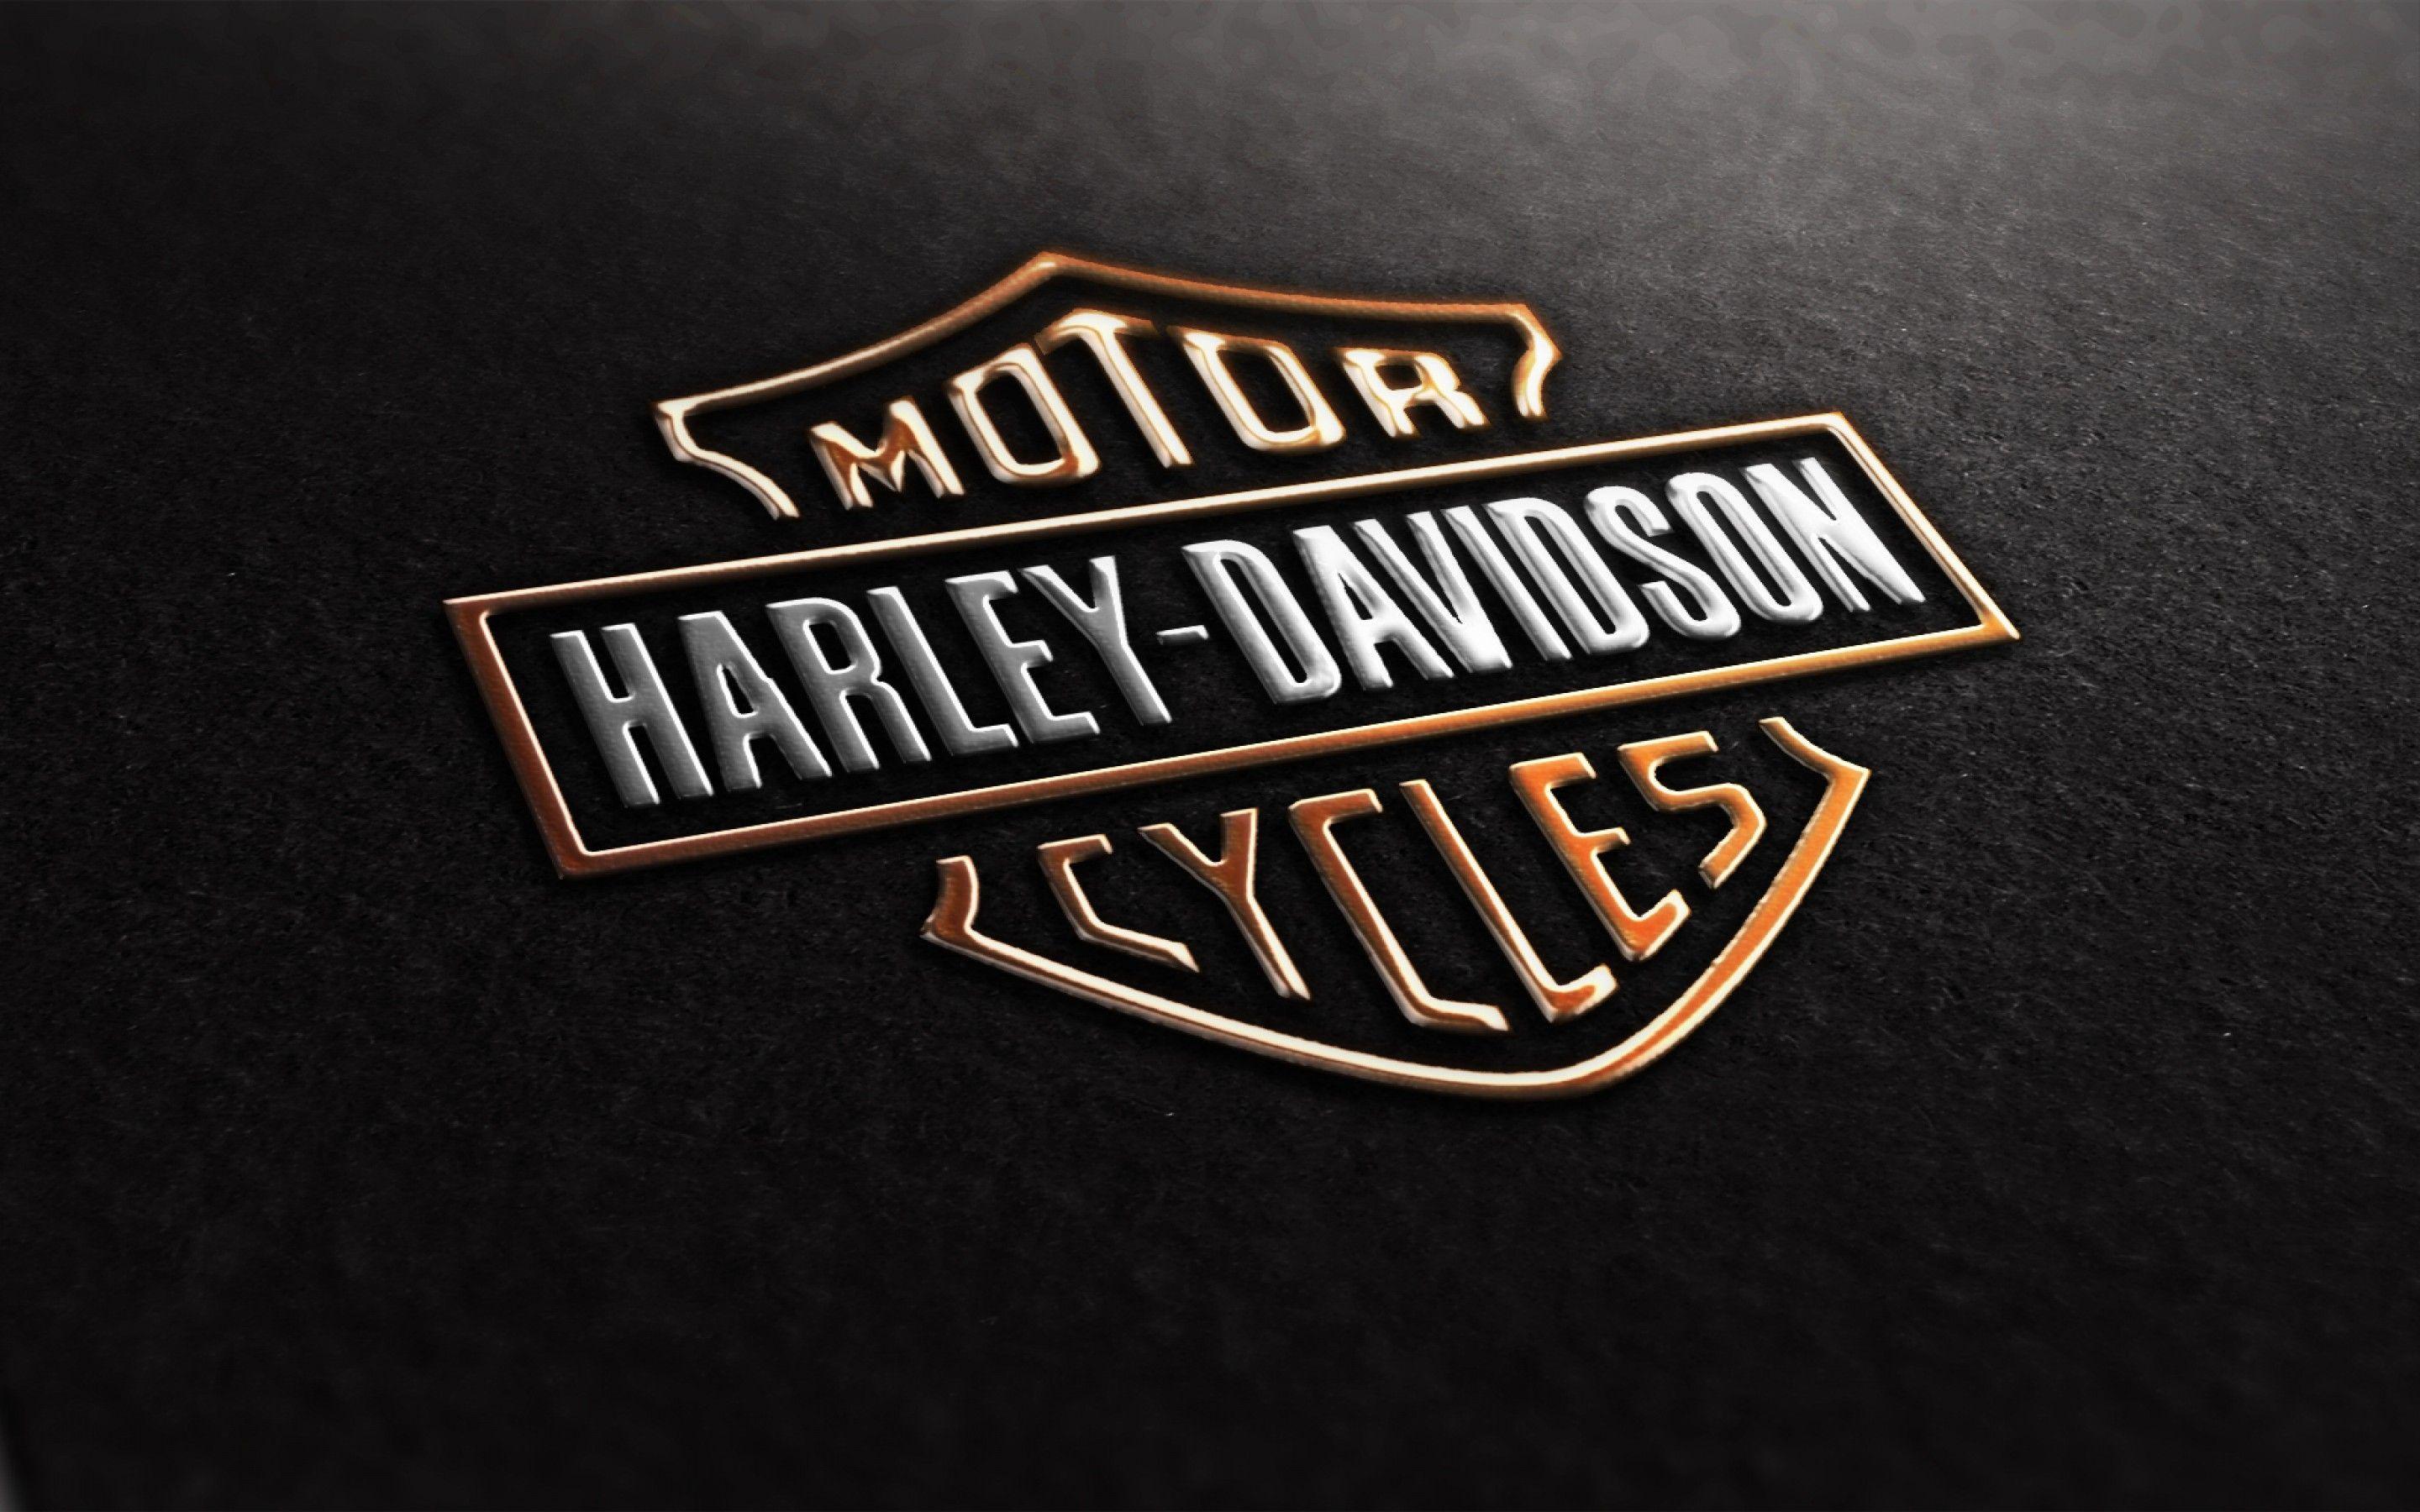 2880x1800 Hình nền Harley Davidson miễn phí